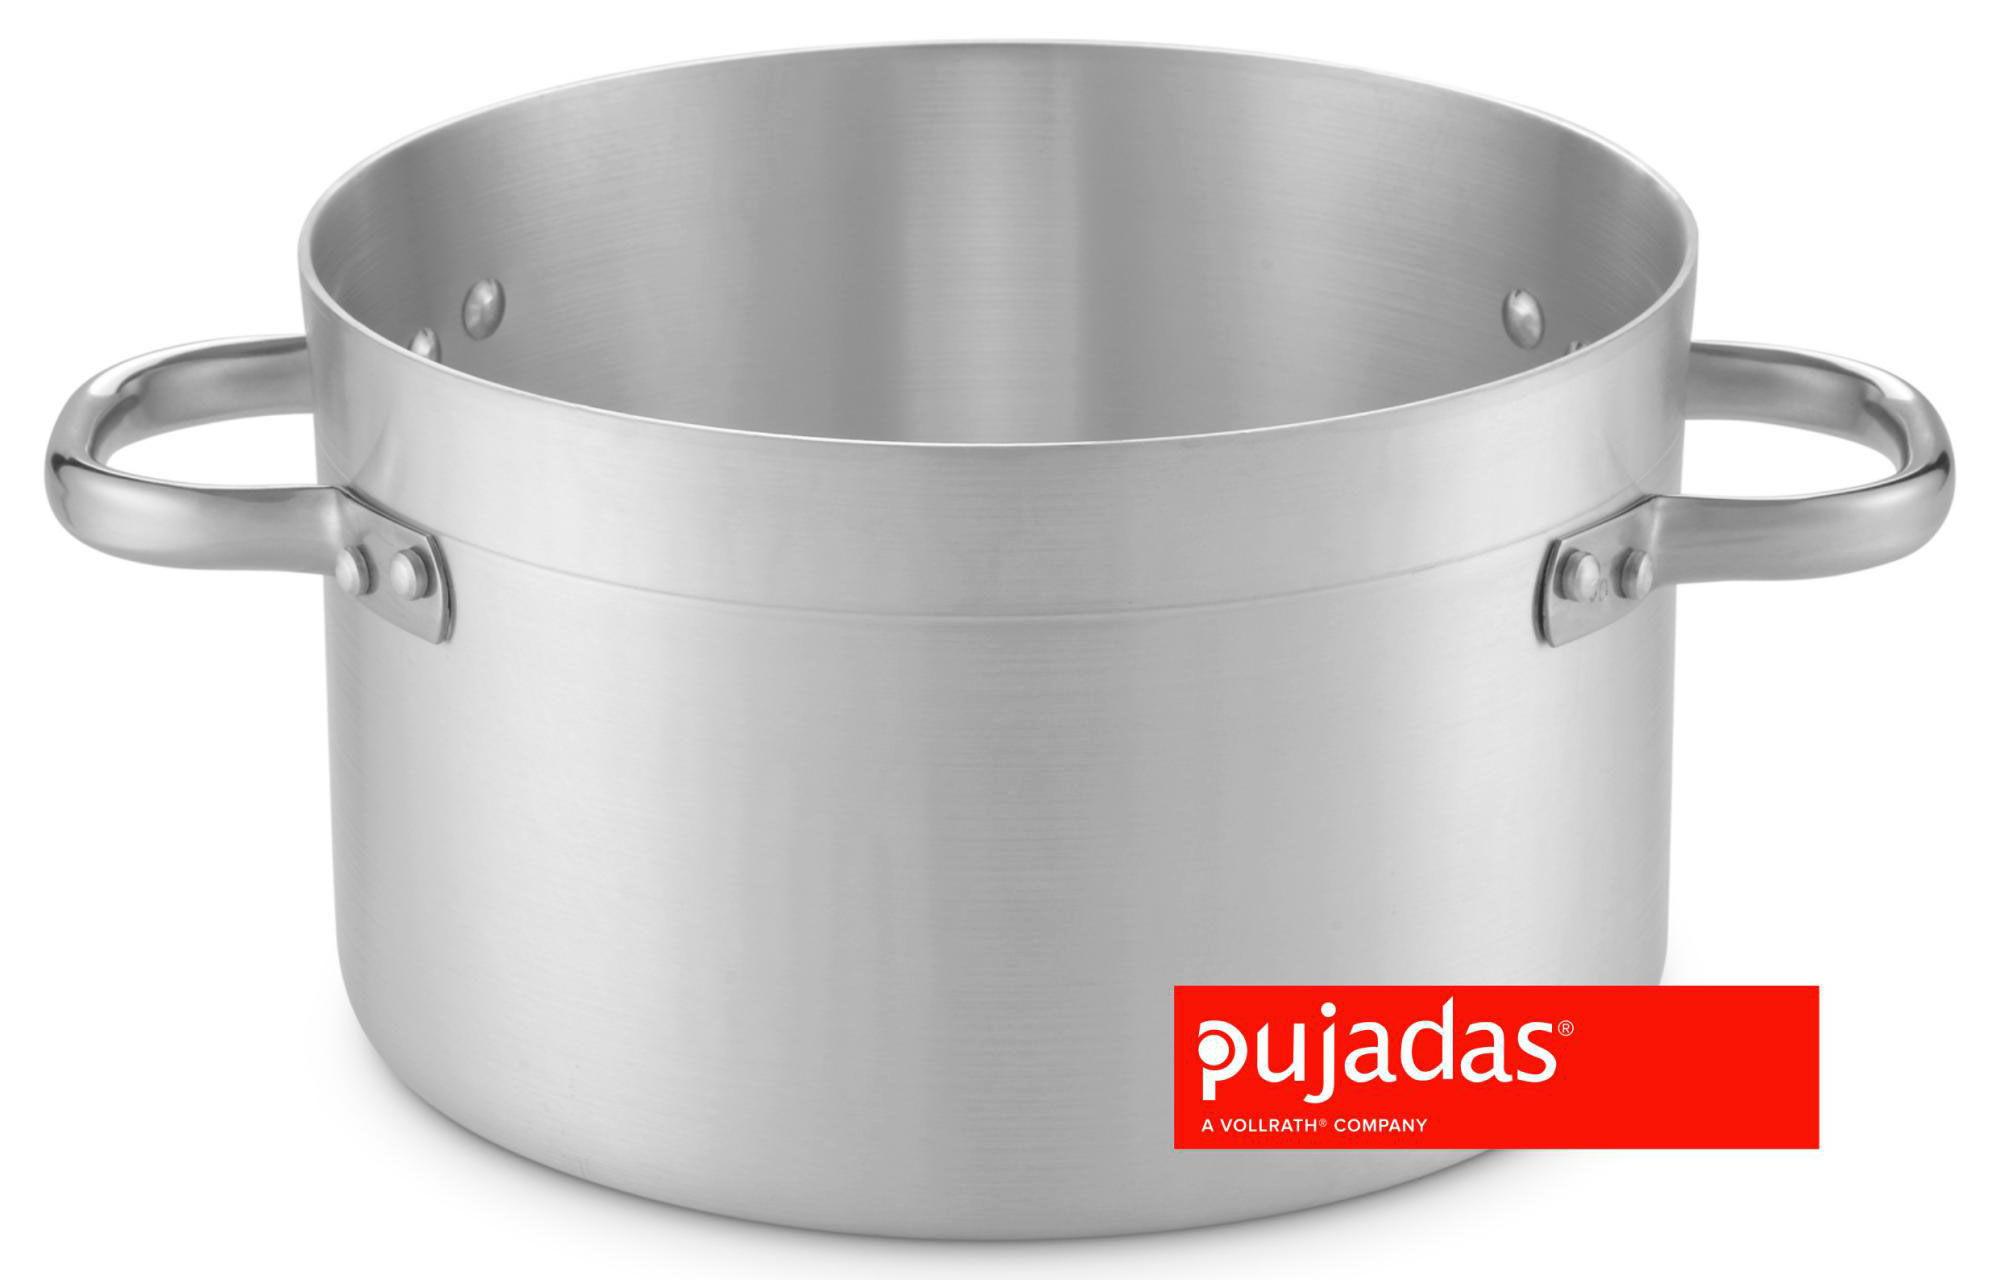 Titán Panamá - Un set de ollas de aluminio para que